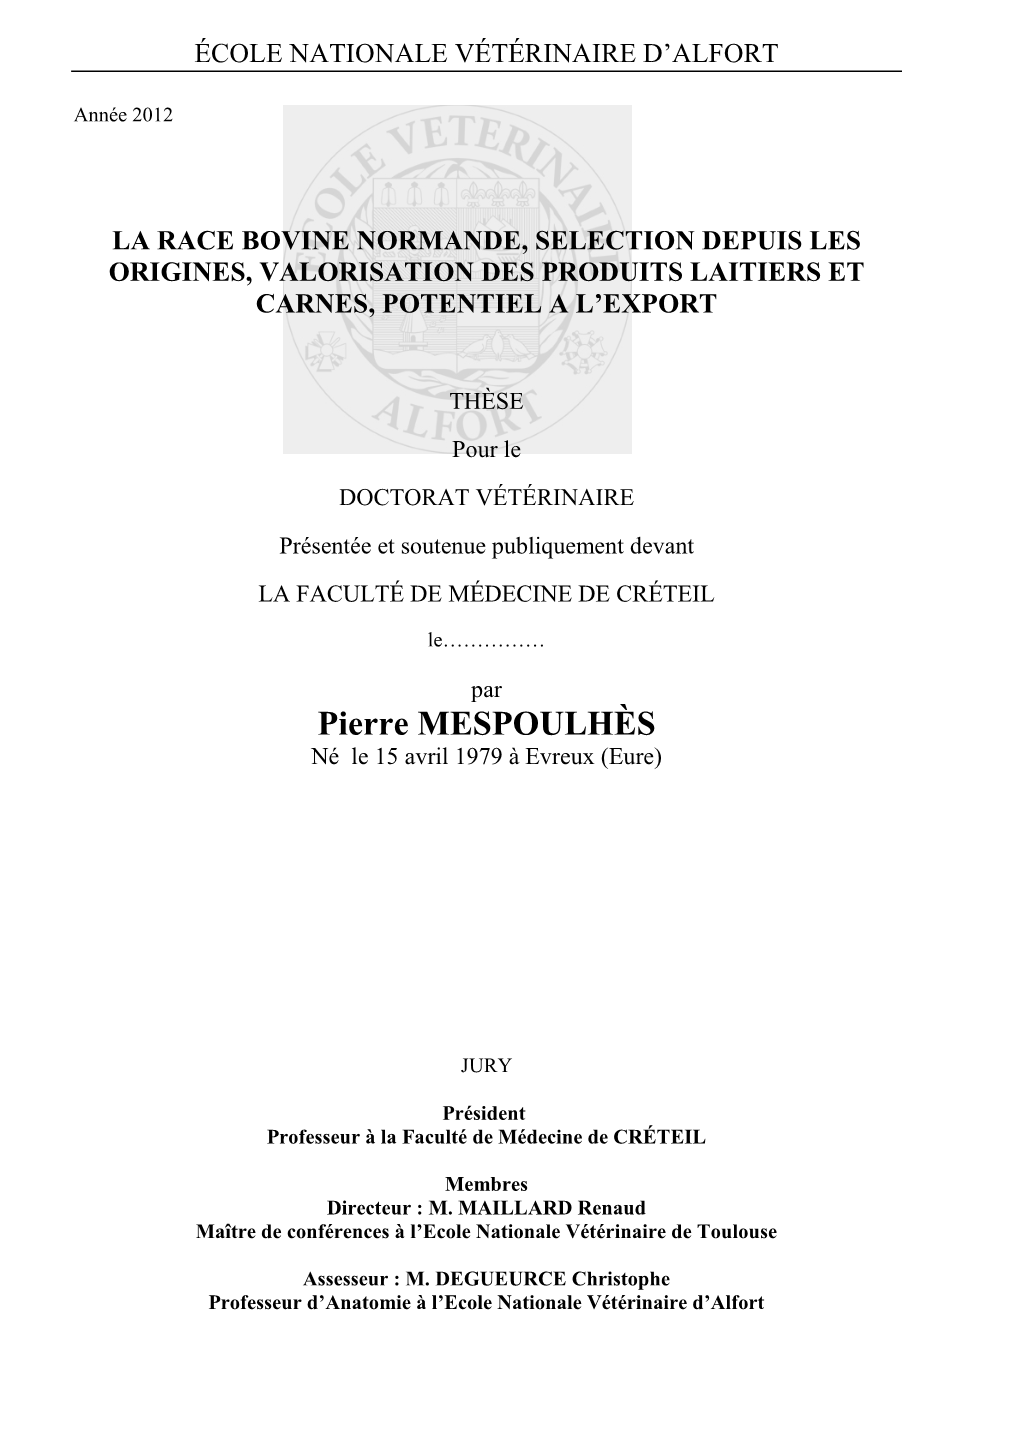 La Race Bovine Normande, Selection Depuis Les Origines, Valorisation Des Produits Laitiers Et Carnes, Potentiel a L’Export